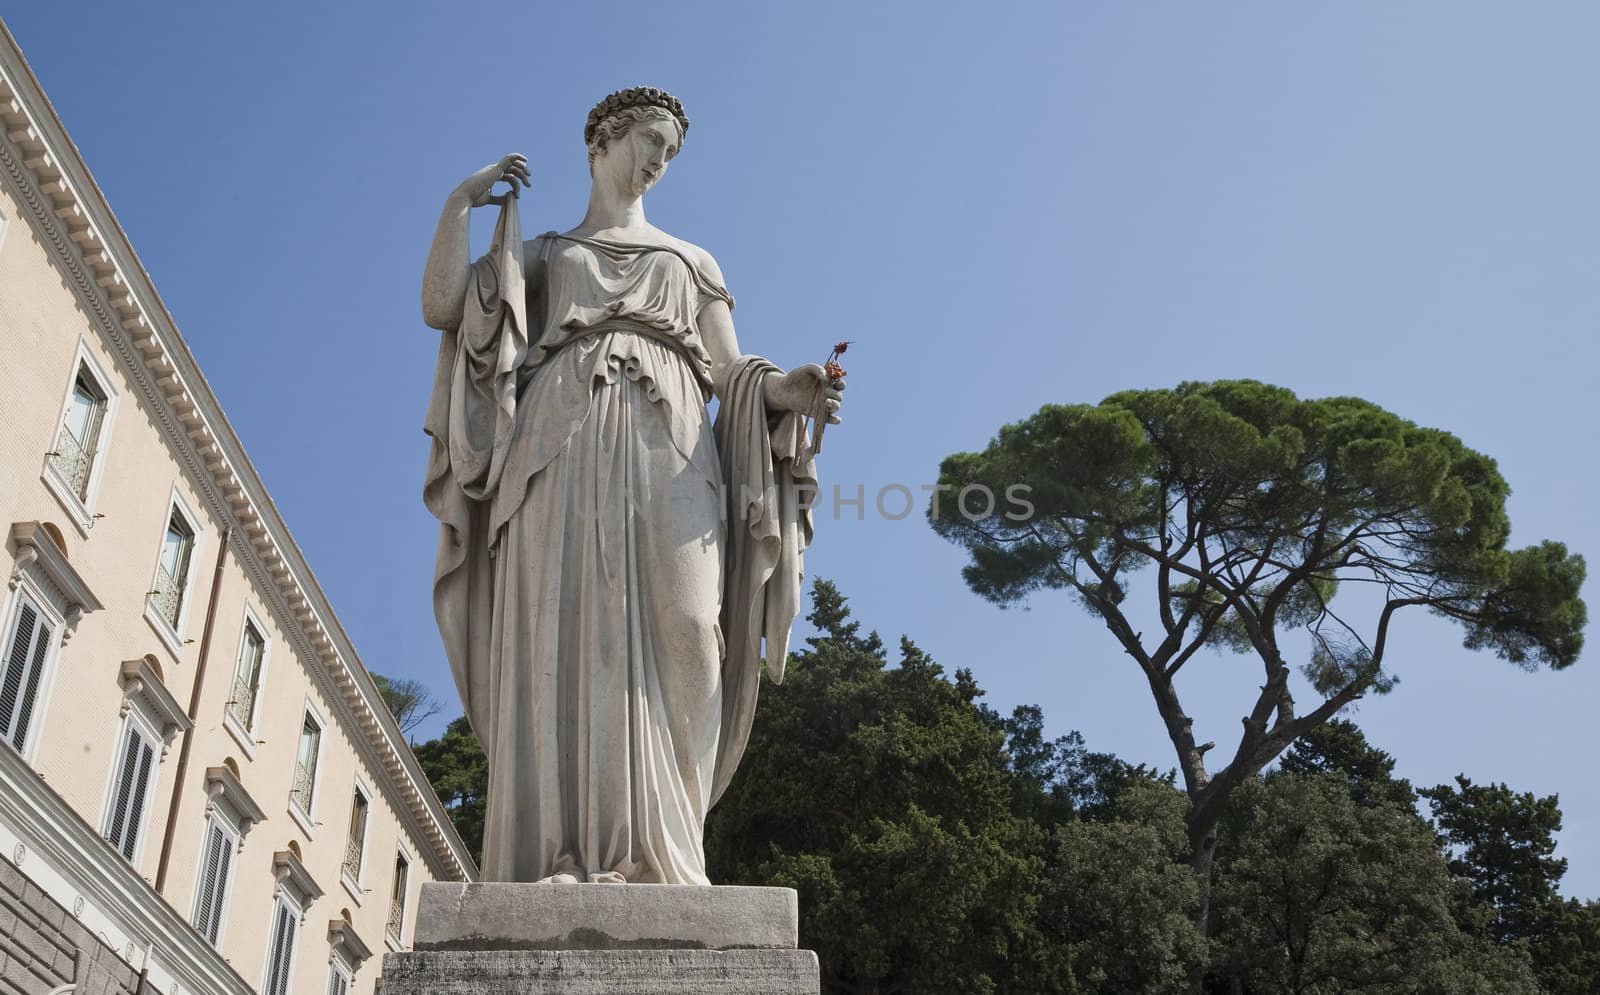 One of the four allegorical sculptures in Piazza del Popolo, Rome Italy - La Primavera - Spring - by Filippo Gnaccarini.